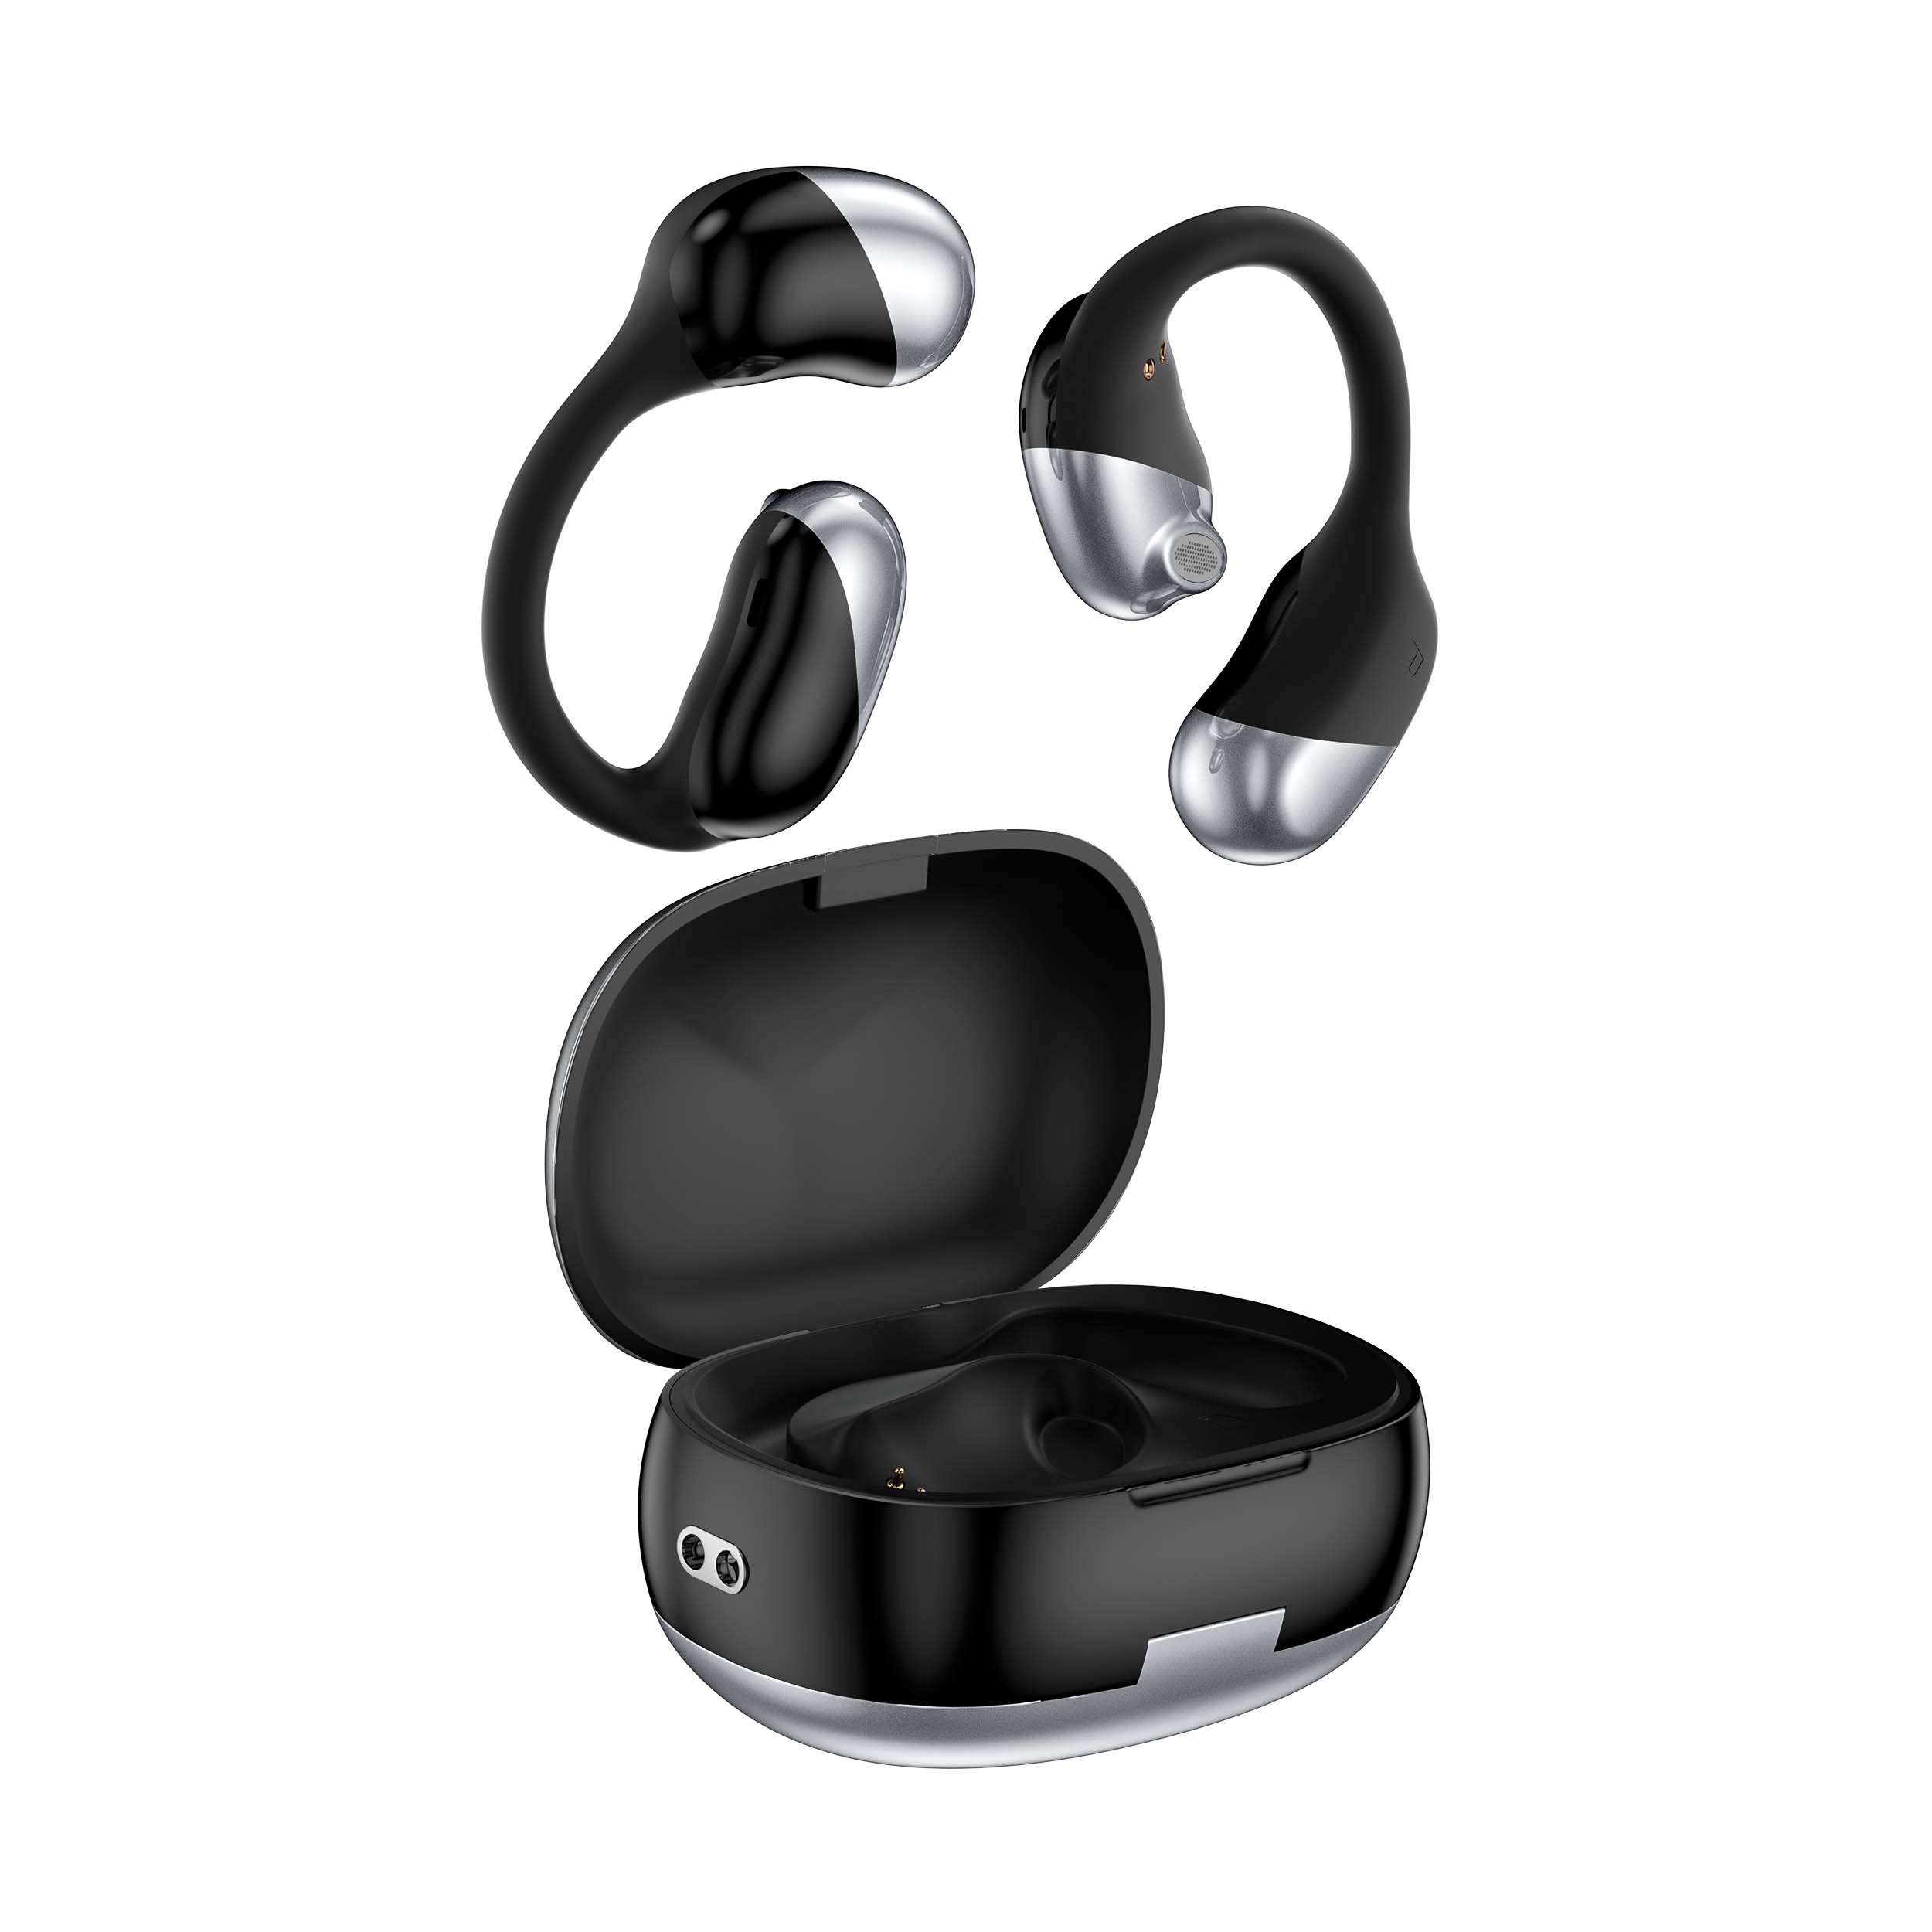 La última personalización personalizada de fábrica OWS abre los auriculares inalámbricos Bluetooth Sports Paypal